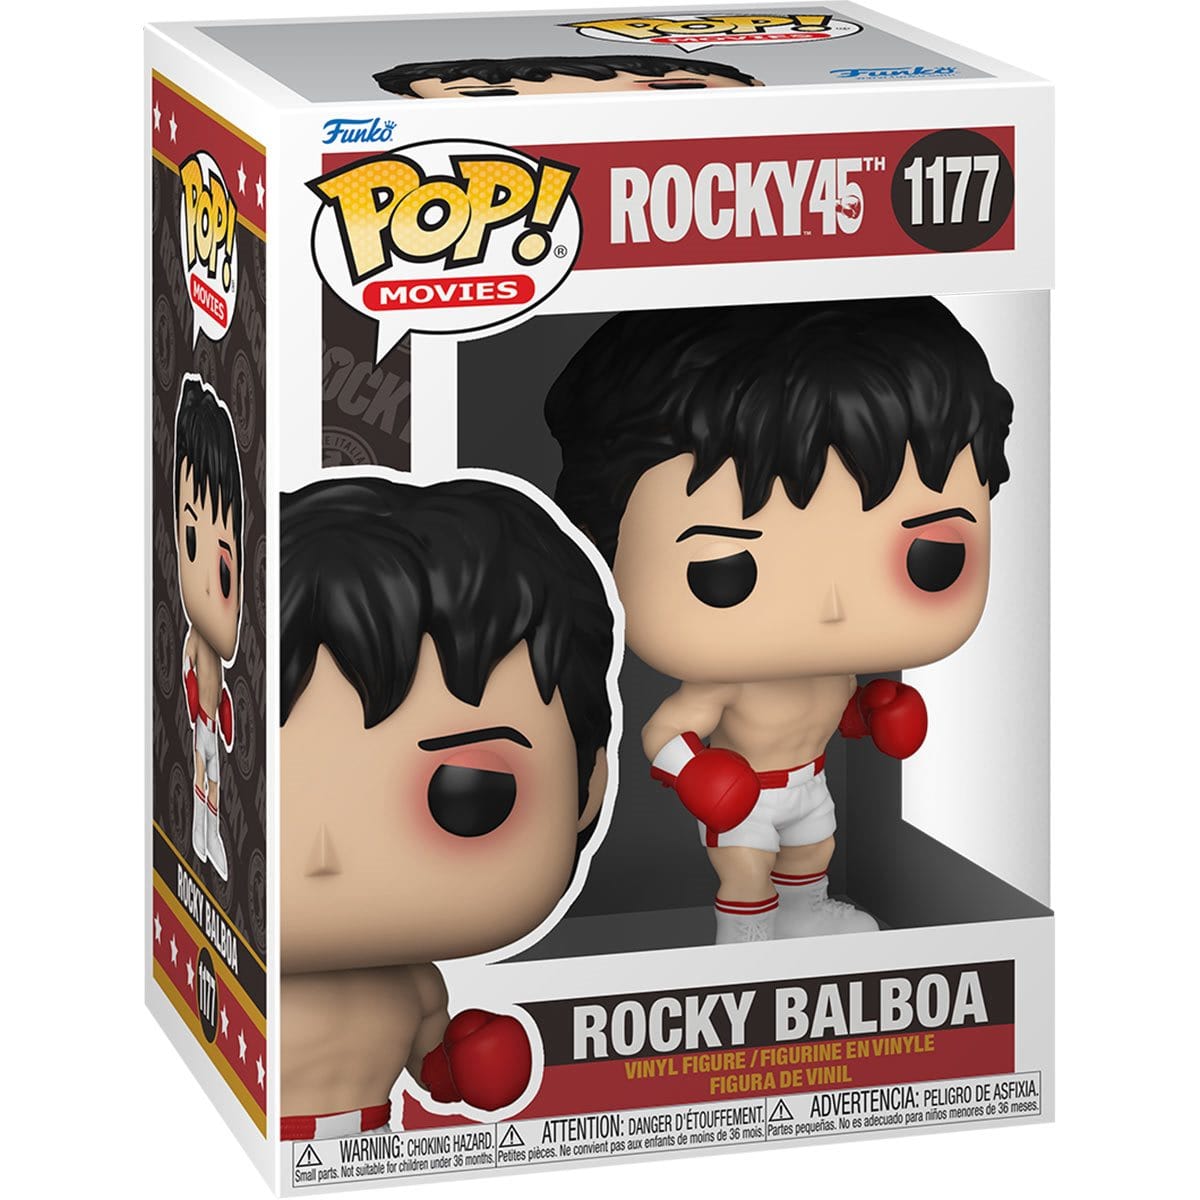 Funko POP Movies: Rocky 45th Anniversary Rocky Balboa #1177 - Pop-O-Loco - Funko